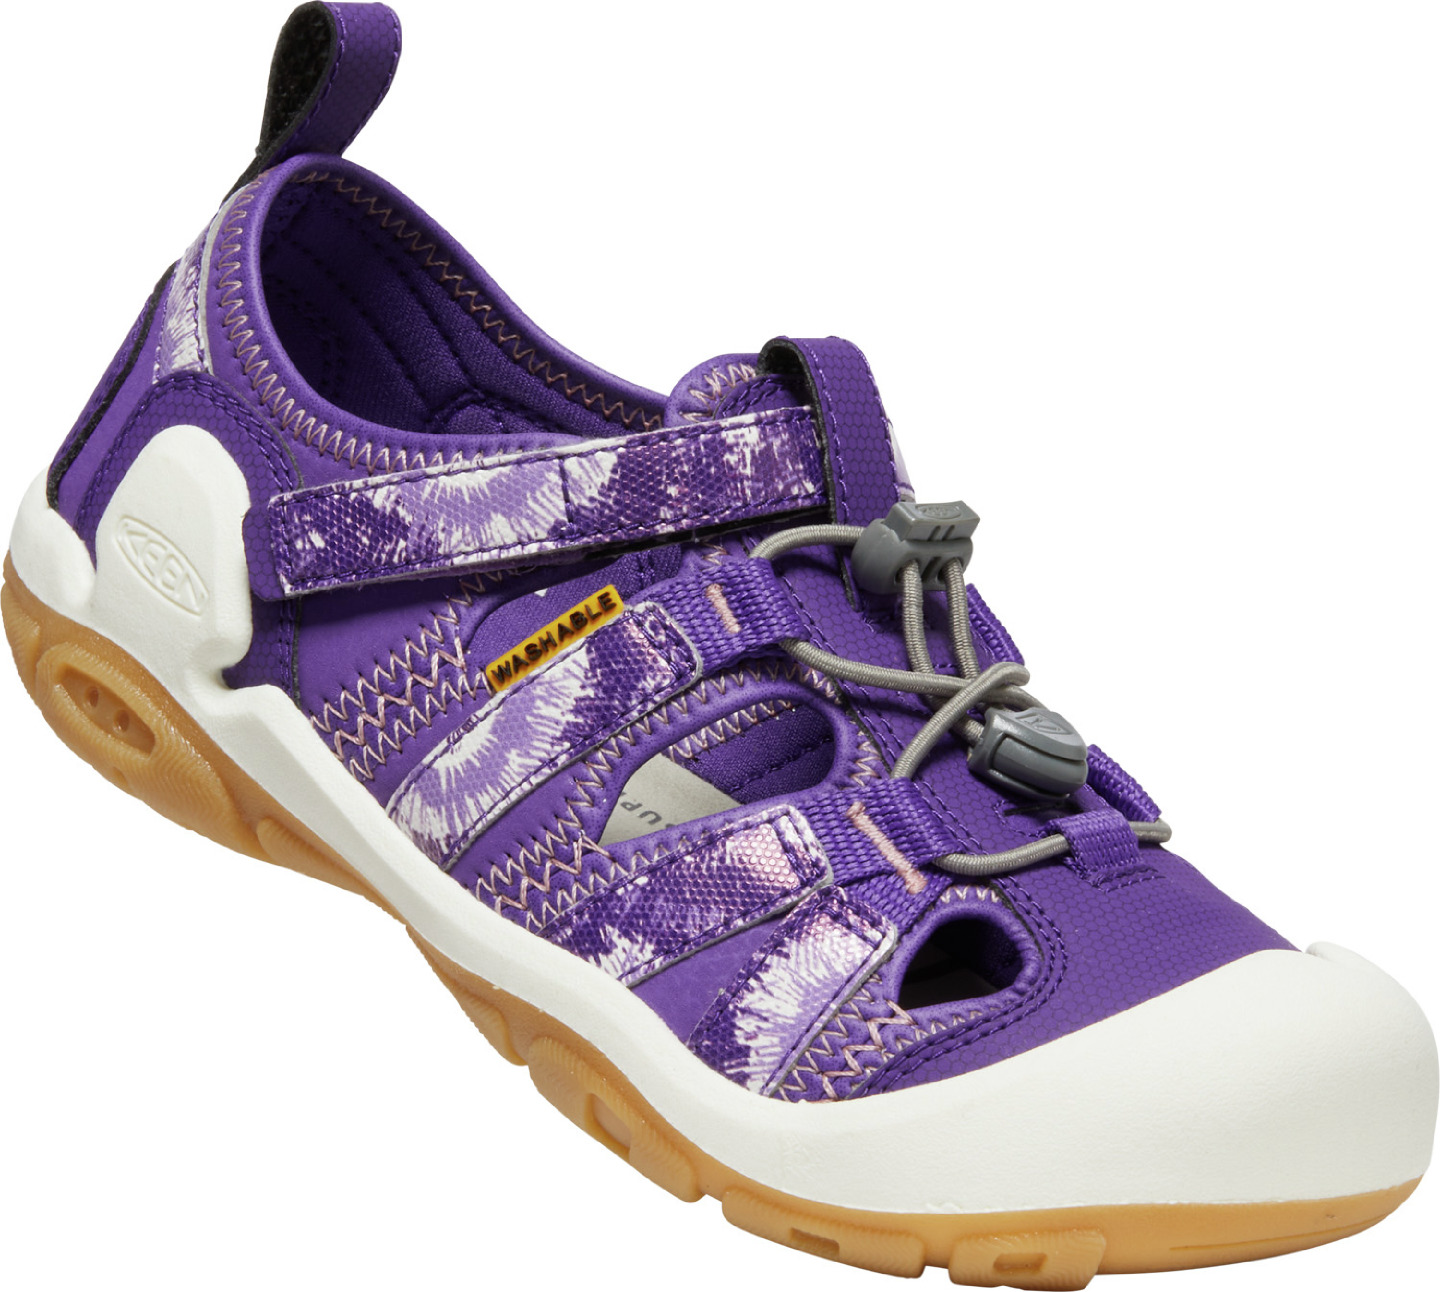 Keen KNOTCH CREEK YOUTH tillandsia purple/englsh lvndr Velikost: 32/33 dětské sandály